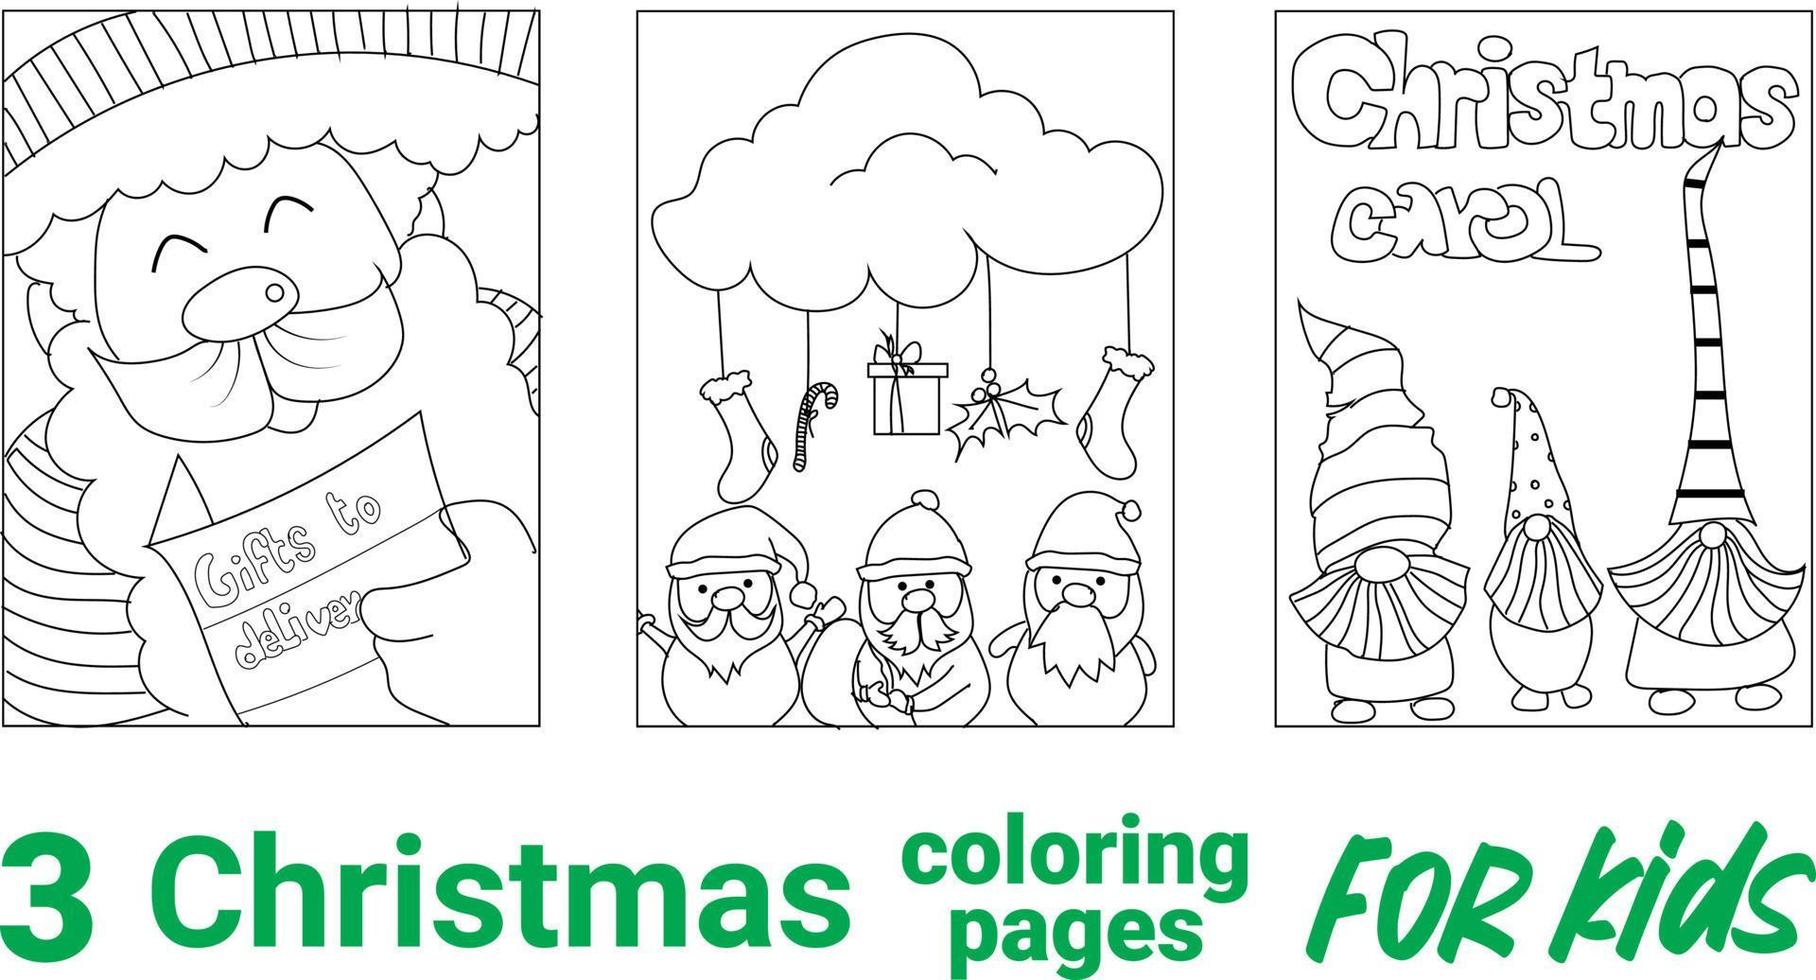 página para colorir de um boneco de neve bonito dos desenhos animados com árvore de natal. ilustração em vetor preto e branco sobre fundo branco.